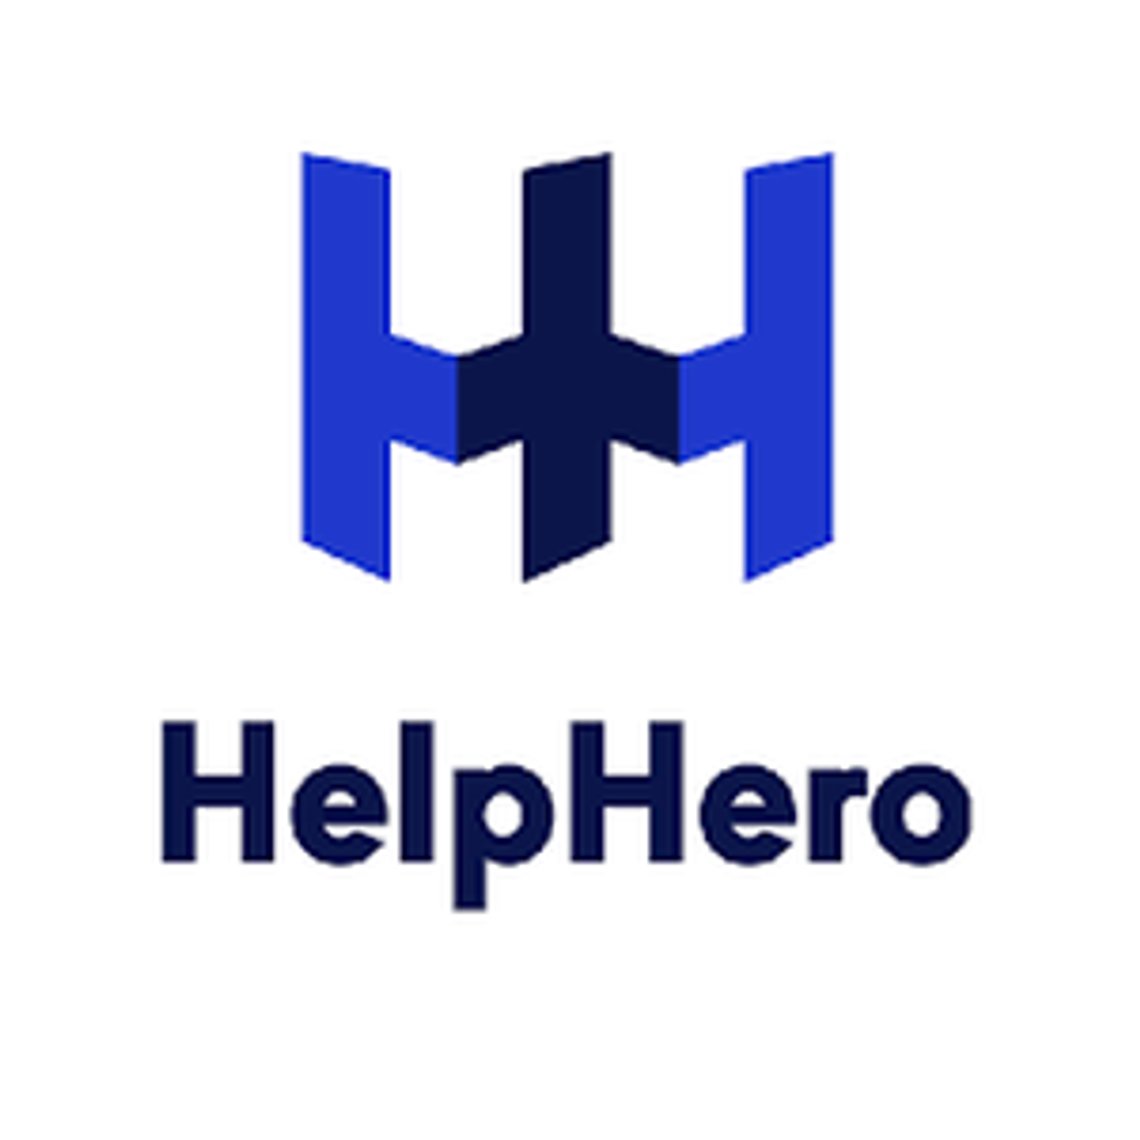 Help Hero - ekspert pośrednictwa prawnego